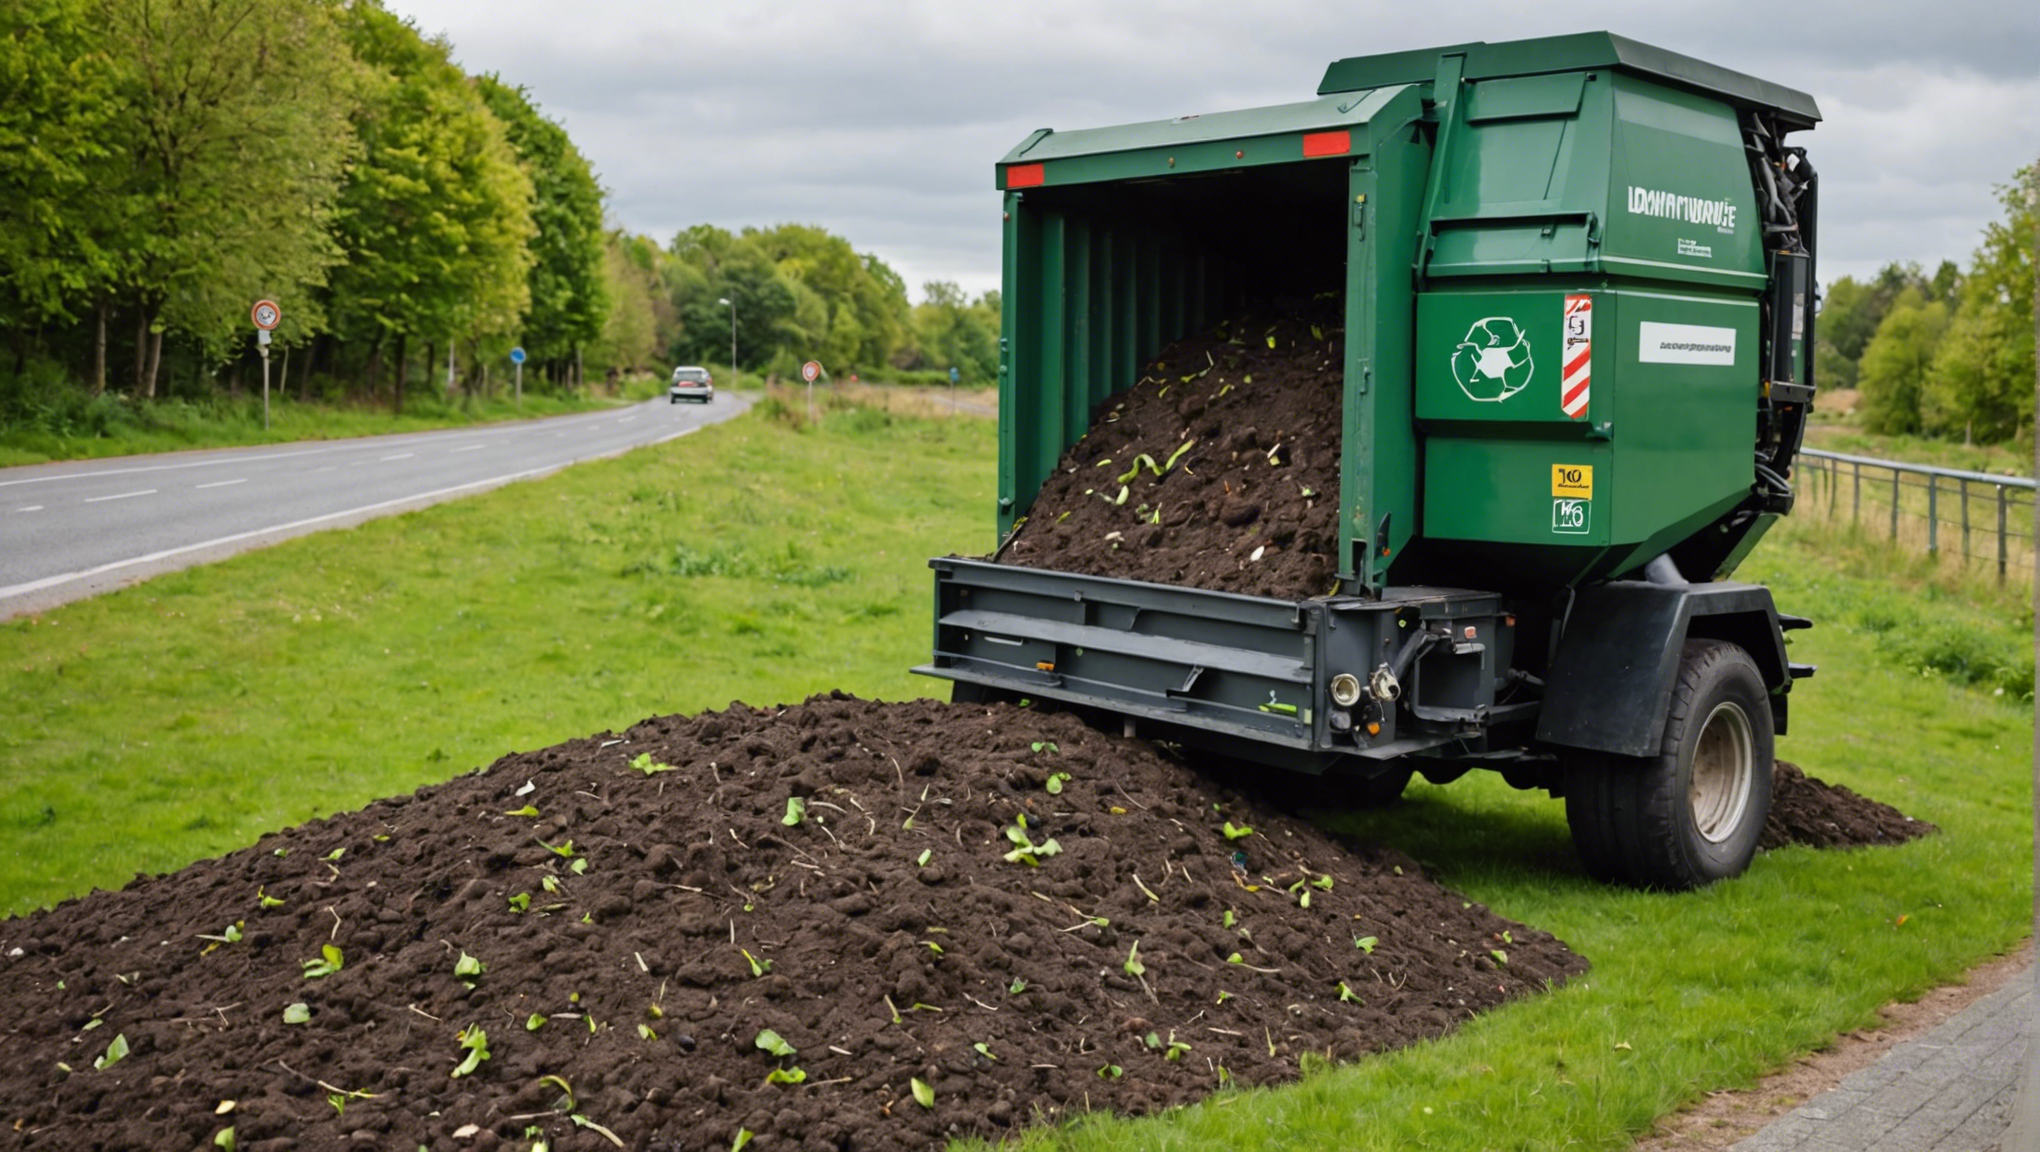 découvrez comment transformer votre compostage avec efficacité grâce à l'utilisation d'un lombricomposteur et réduisez vos déchets organiques tout en favorisant un environnement sain.